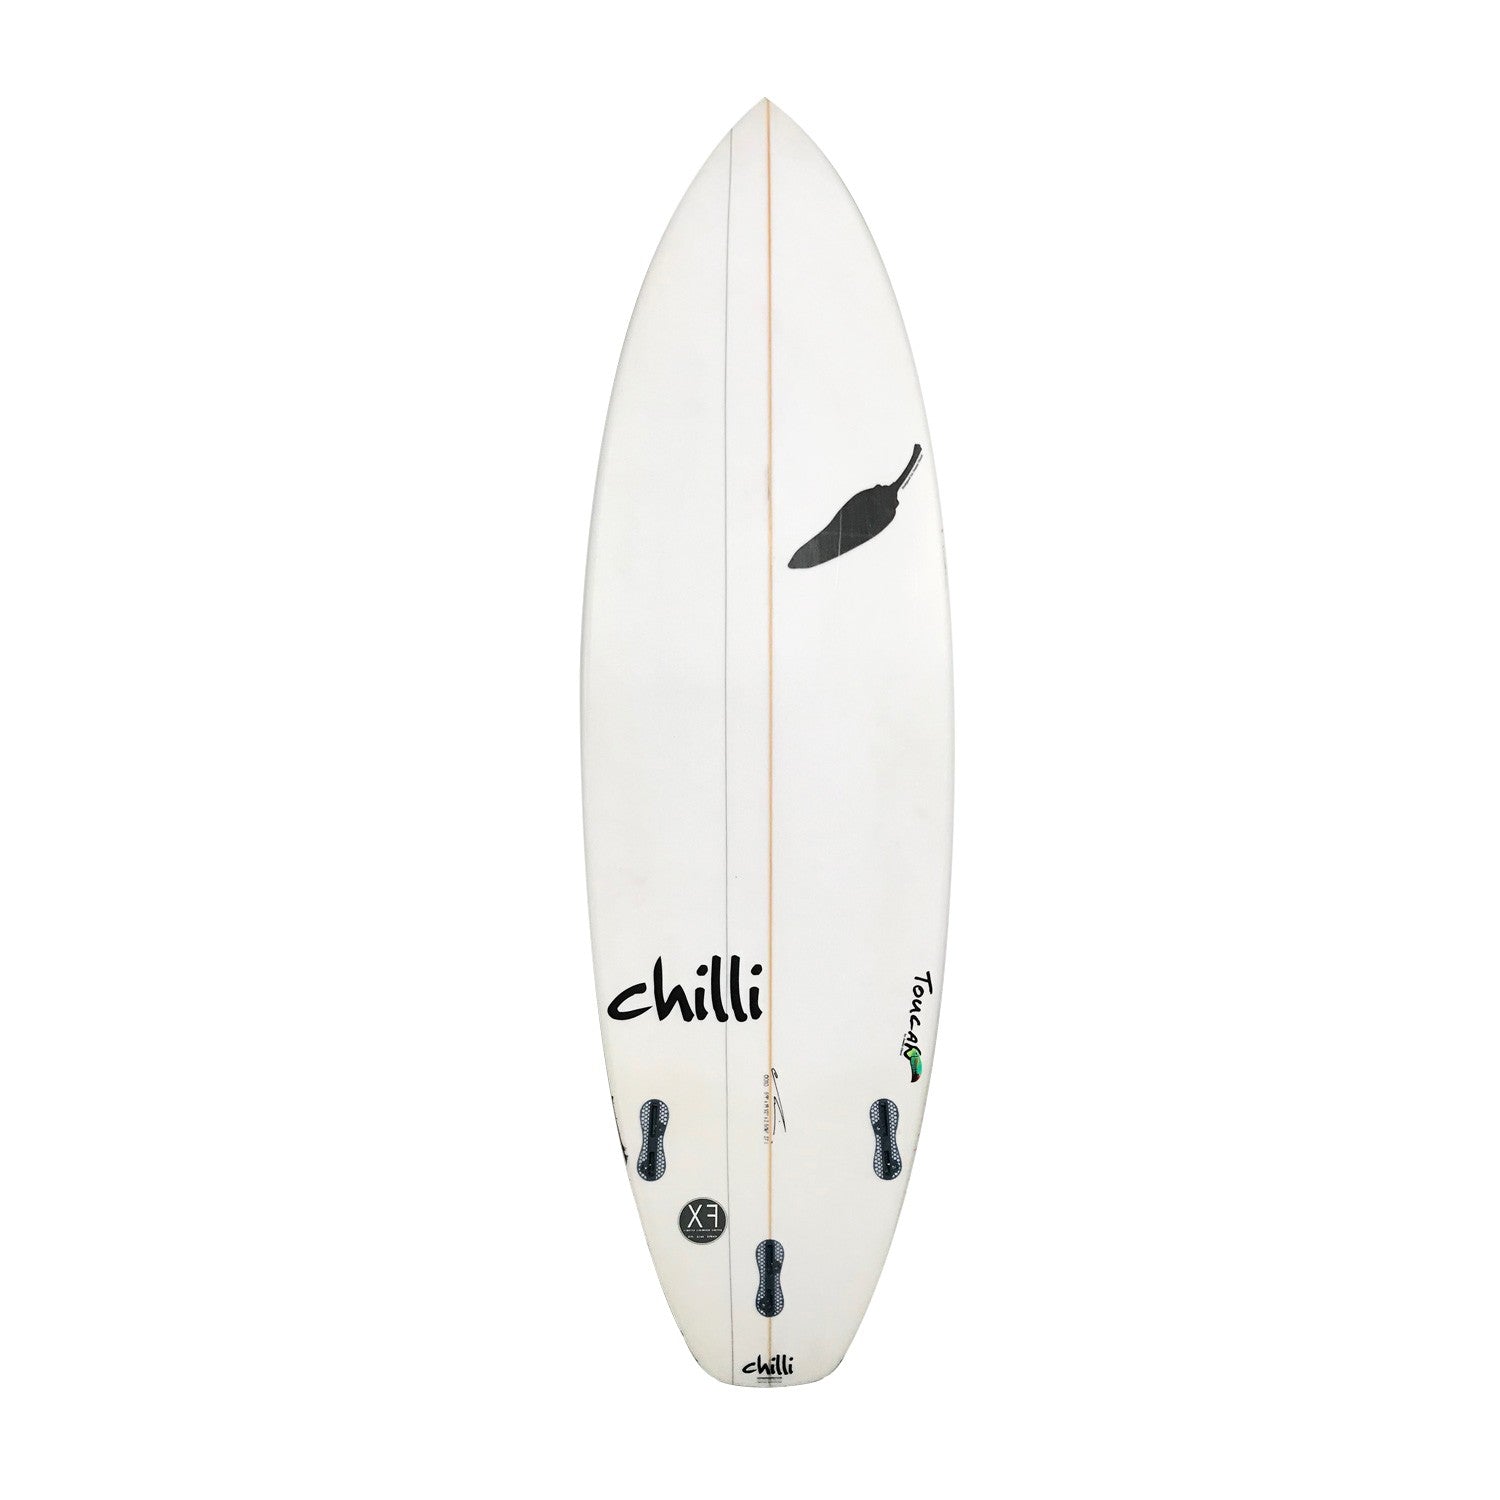 CHILLI Surfboard - Toucan 5'9' Epoxy - FCS II